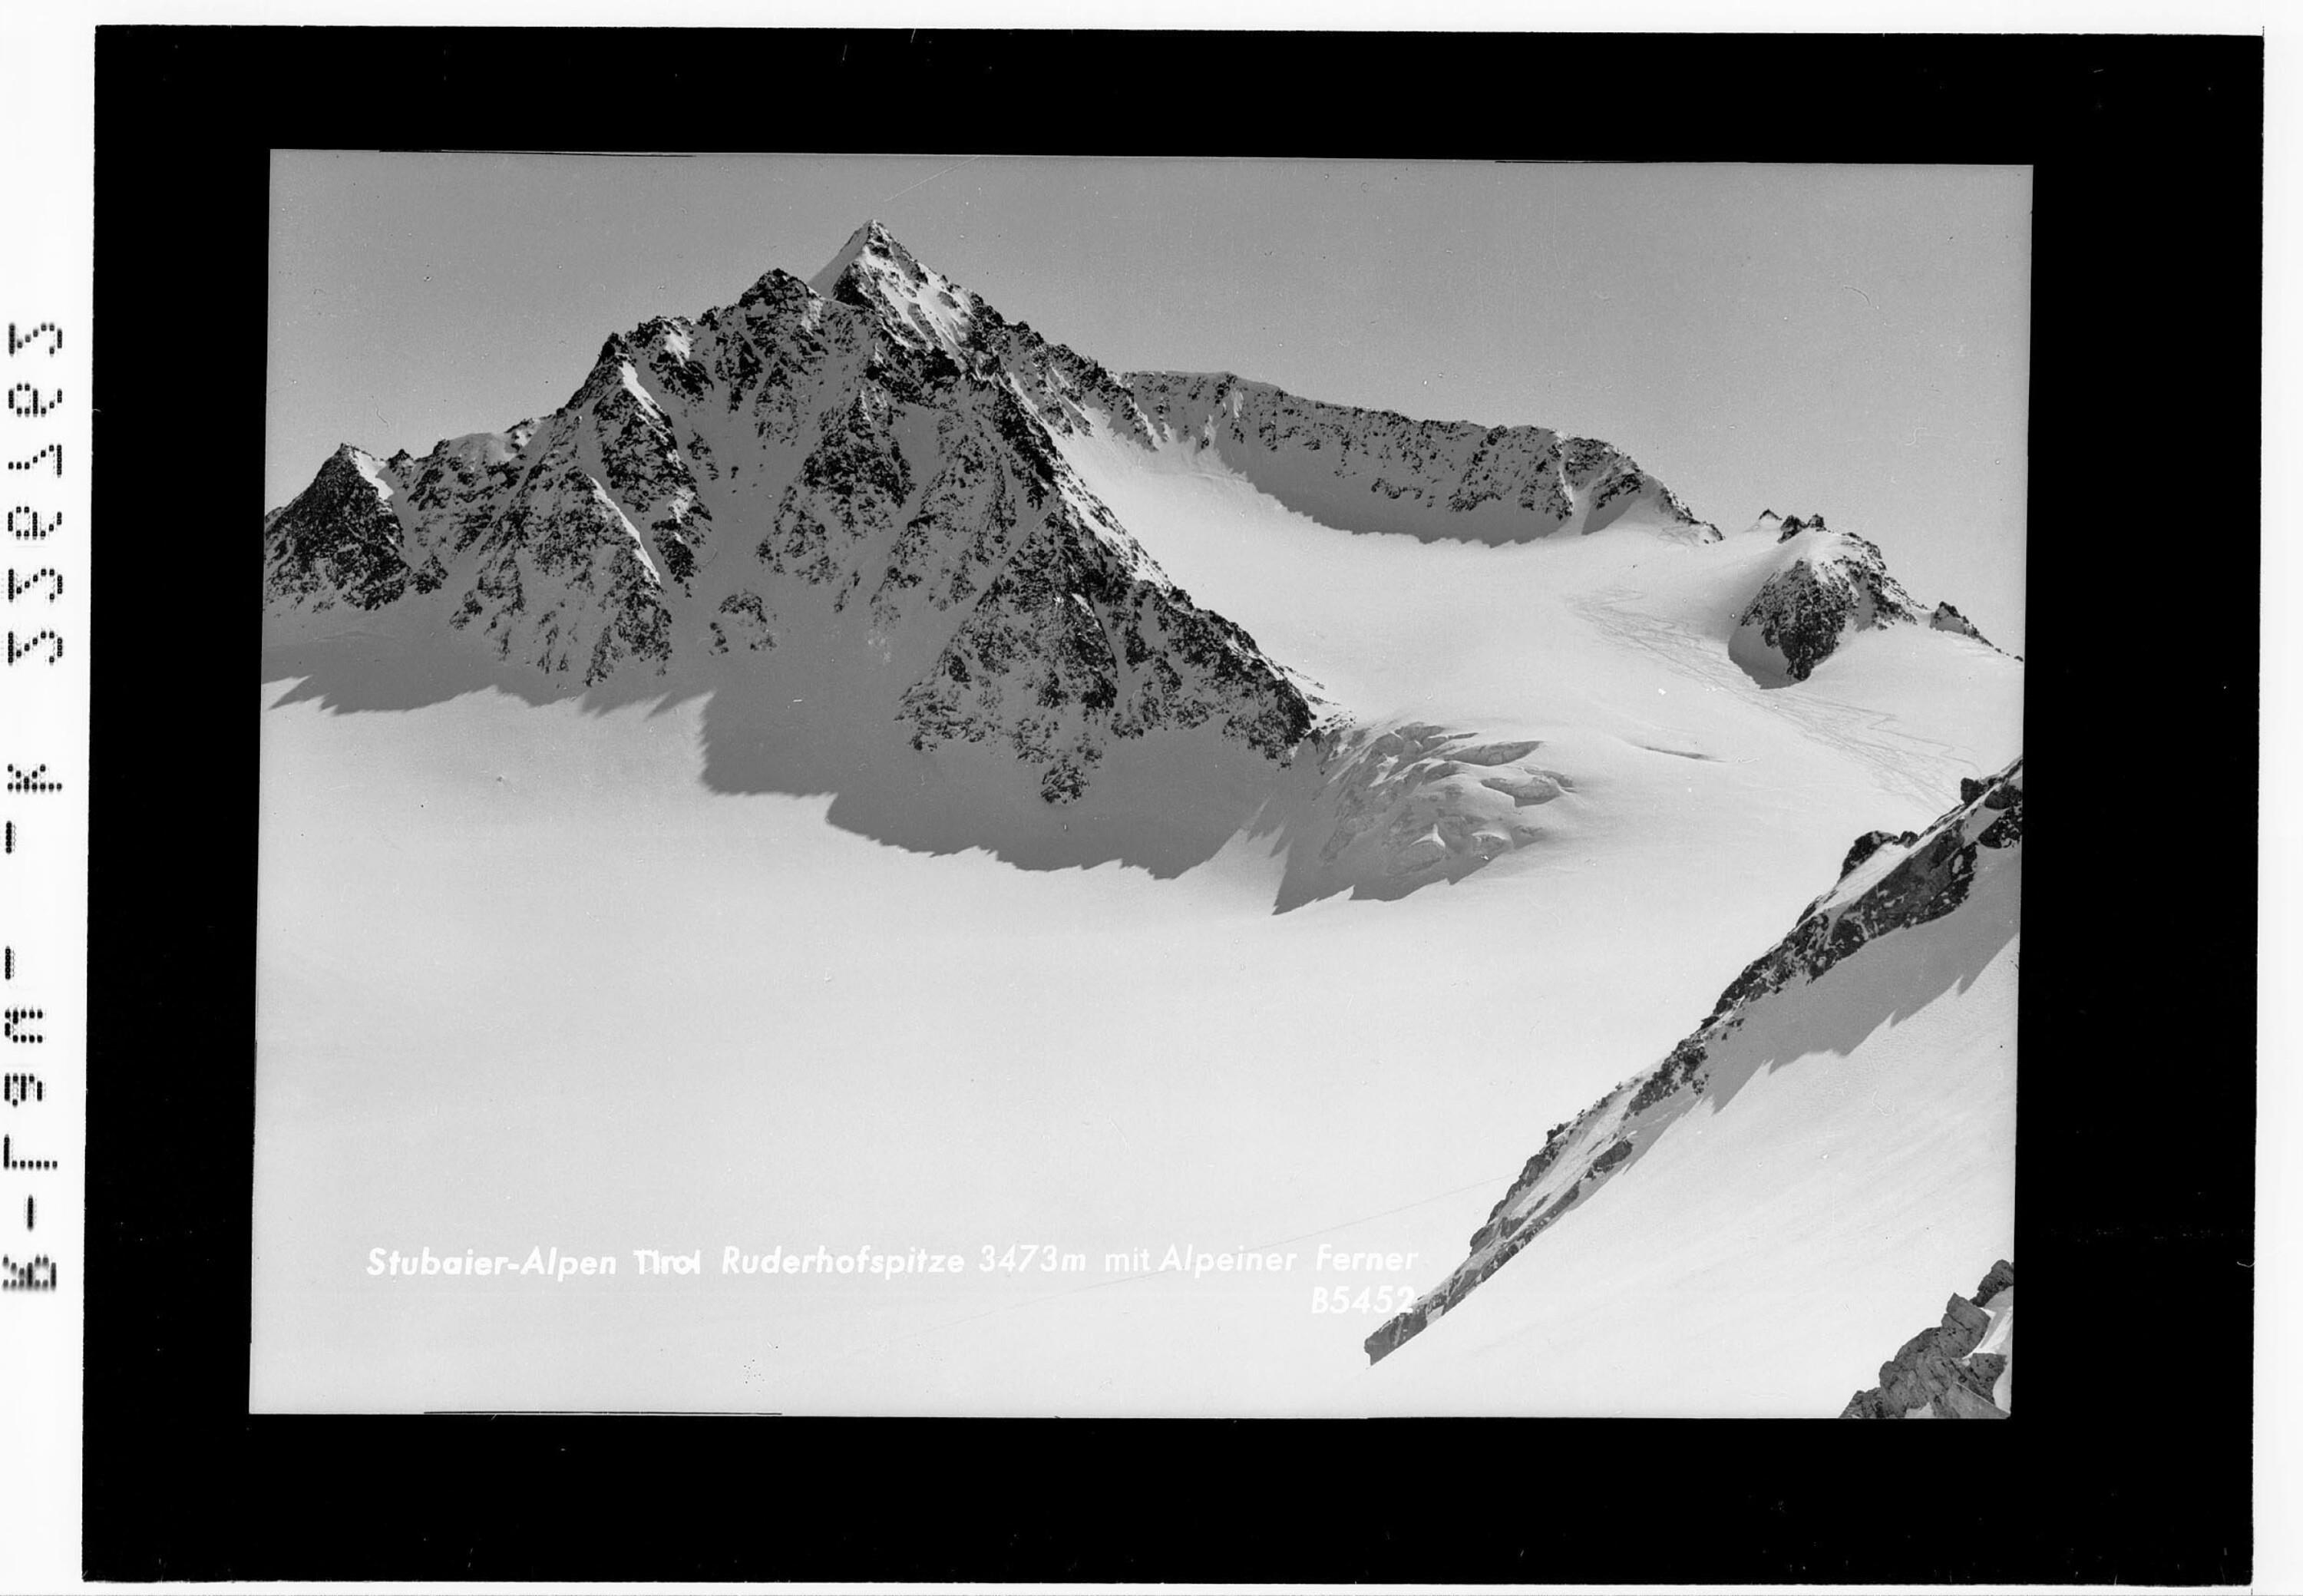 Stubaier Alpen / Tirol / Ruderhofspitze 3473 m mit Alpeiner Ferner></div>


    <hr>
    <div class=